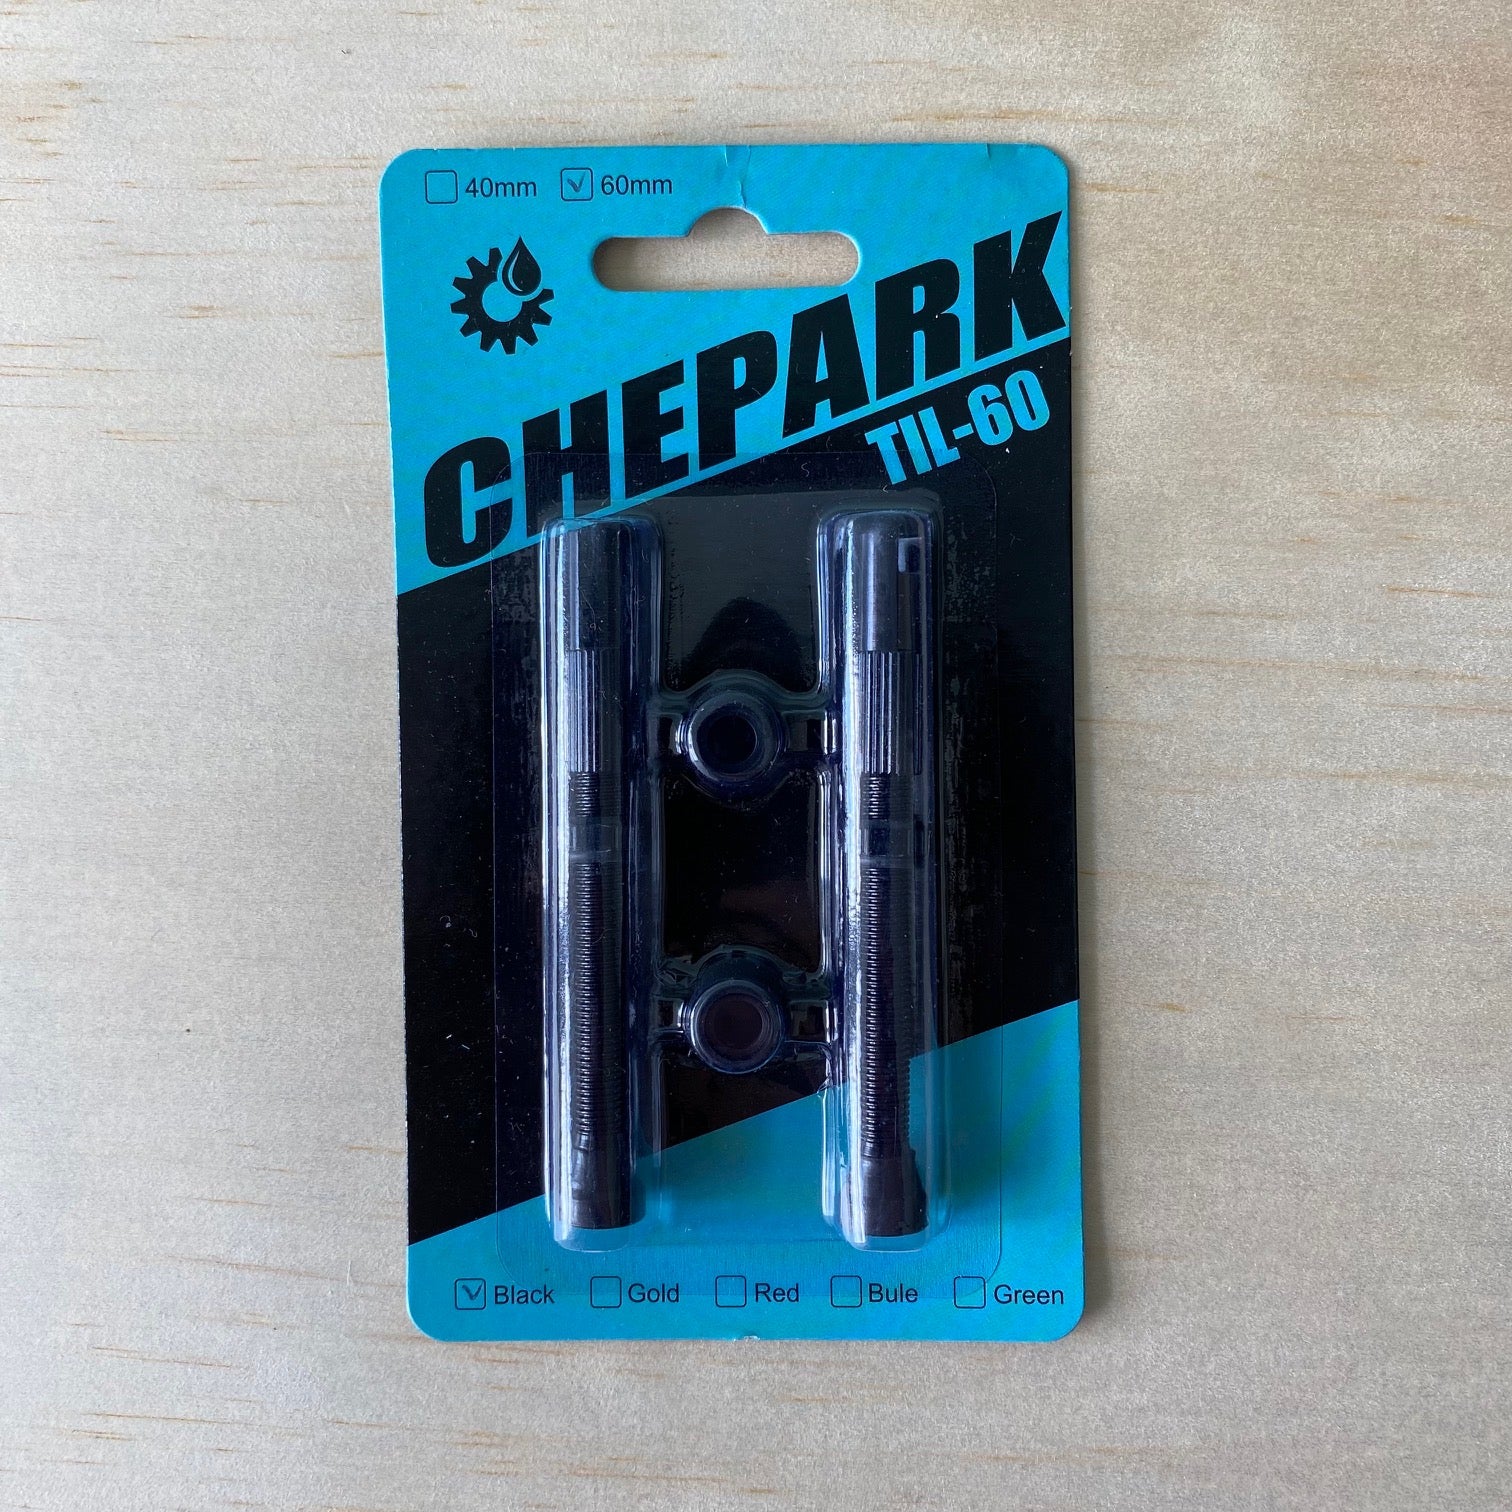 CHEPARK TIL-60 Tubeless Valve Stems - Black – I Like Your Bike